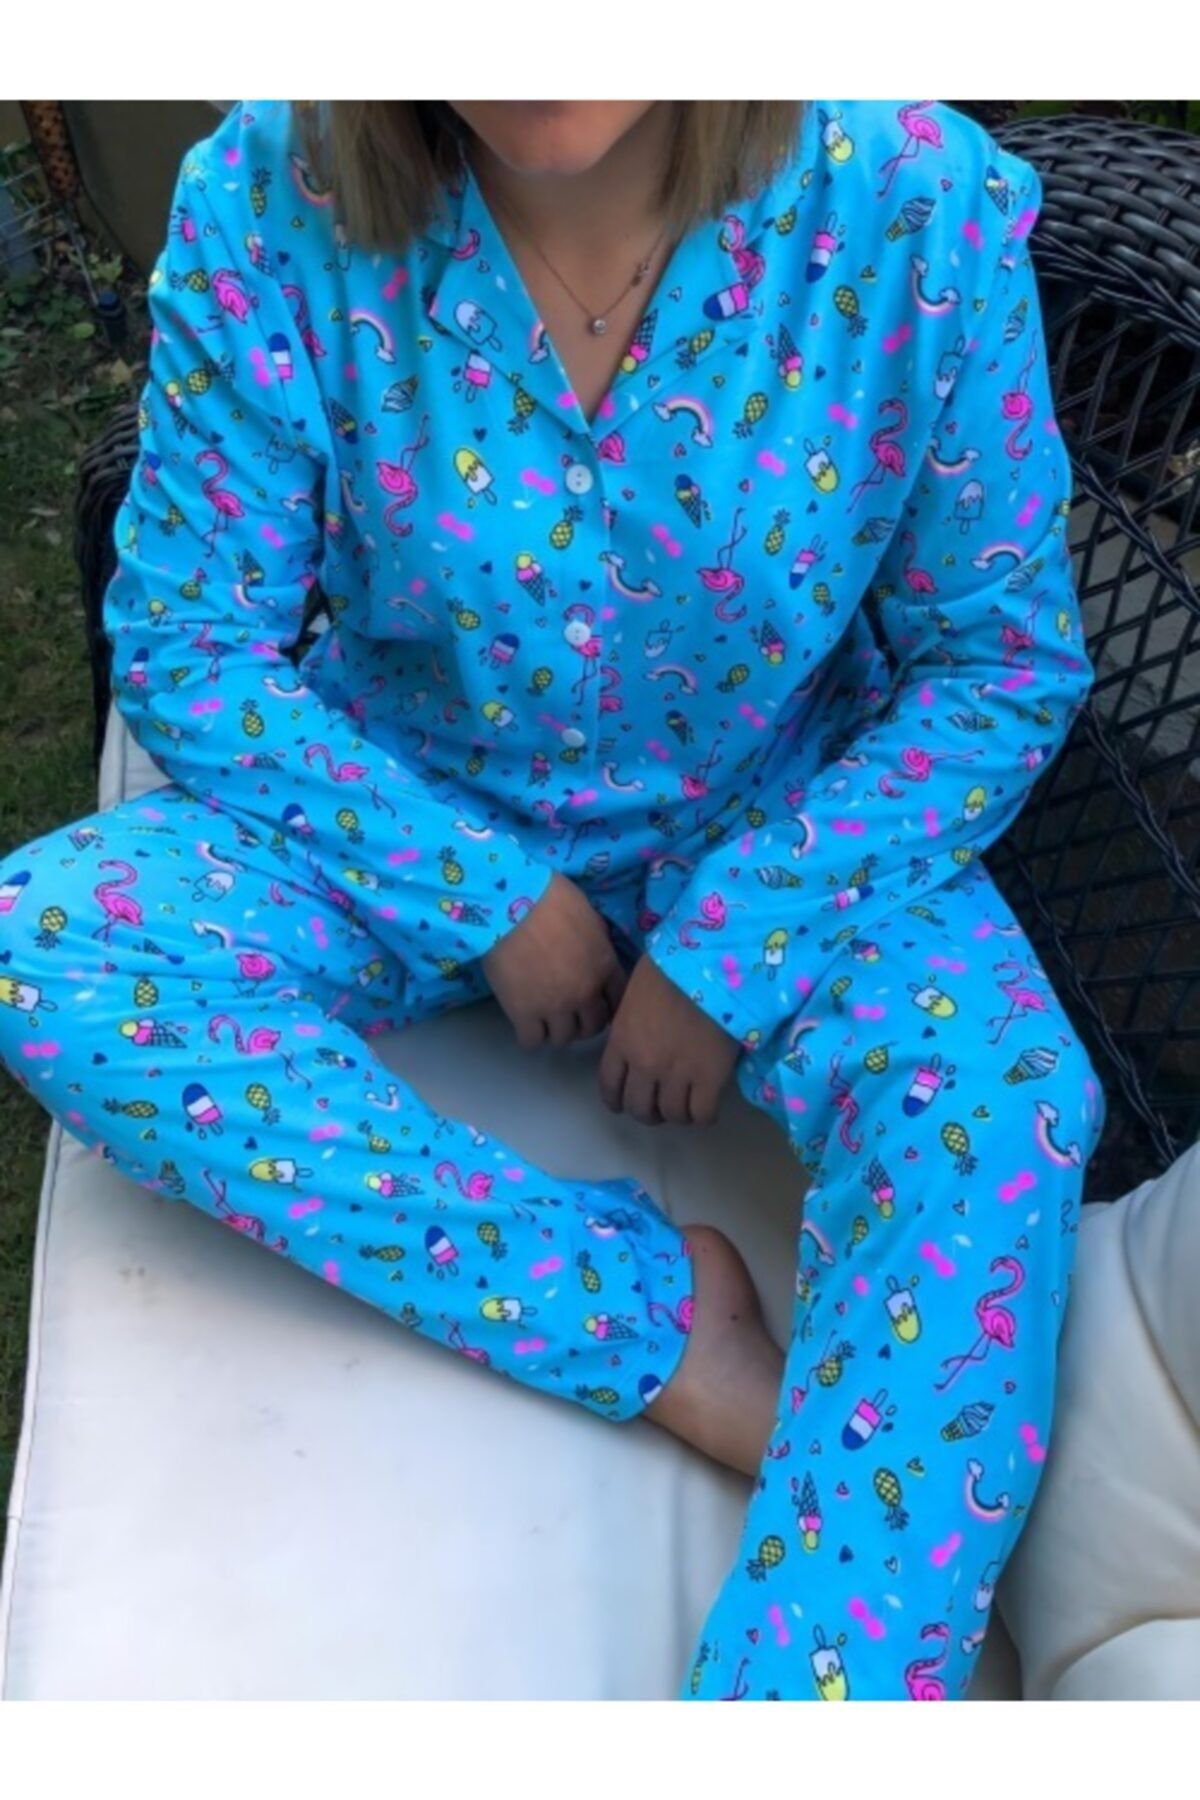 Şımarıkhome Kadın Mavi Pijama Takımı